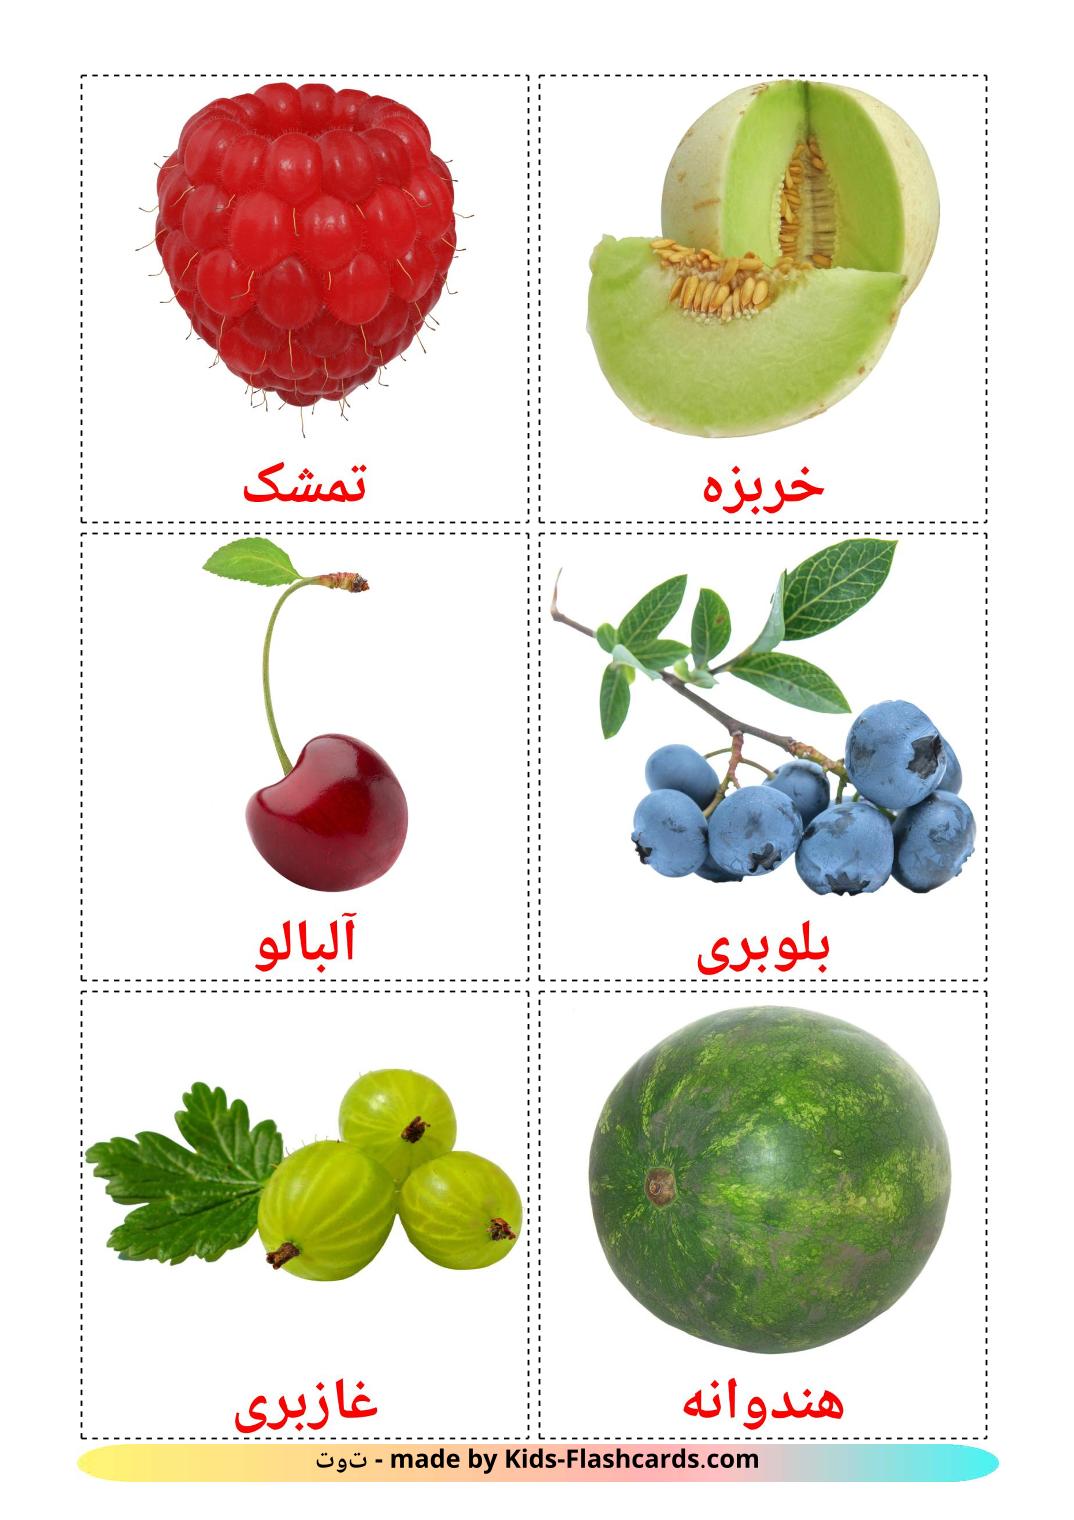 Bagas - 11 Flashcards persaes gratuitos para impressão